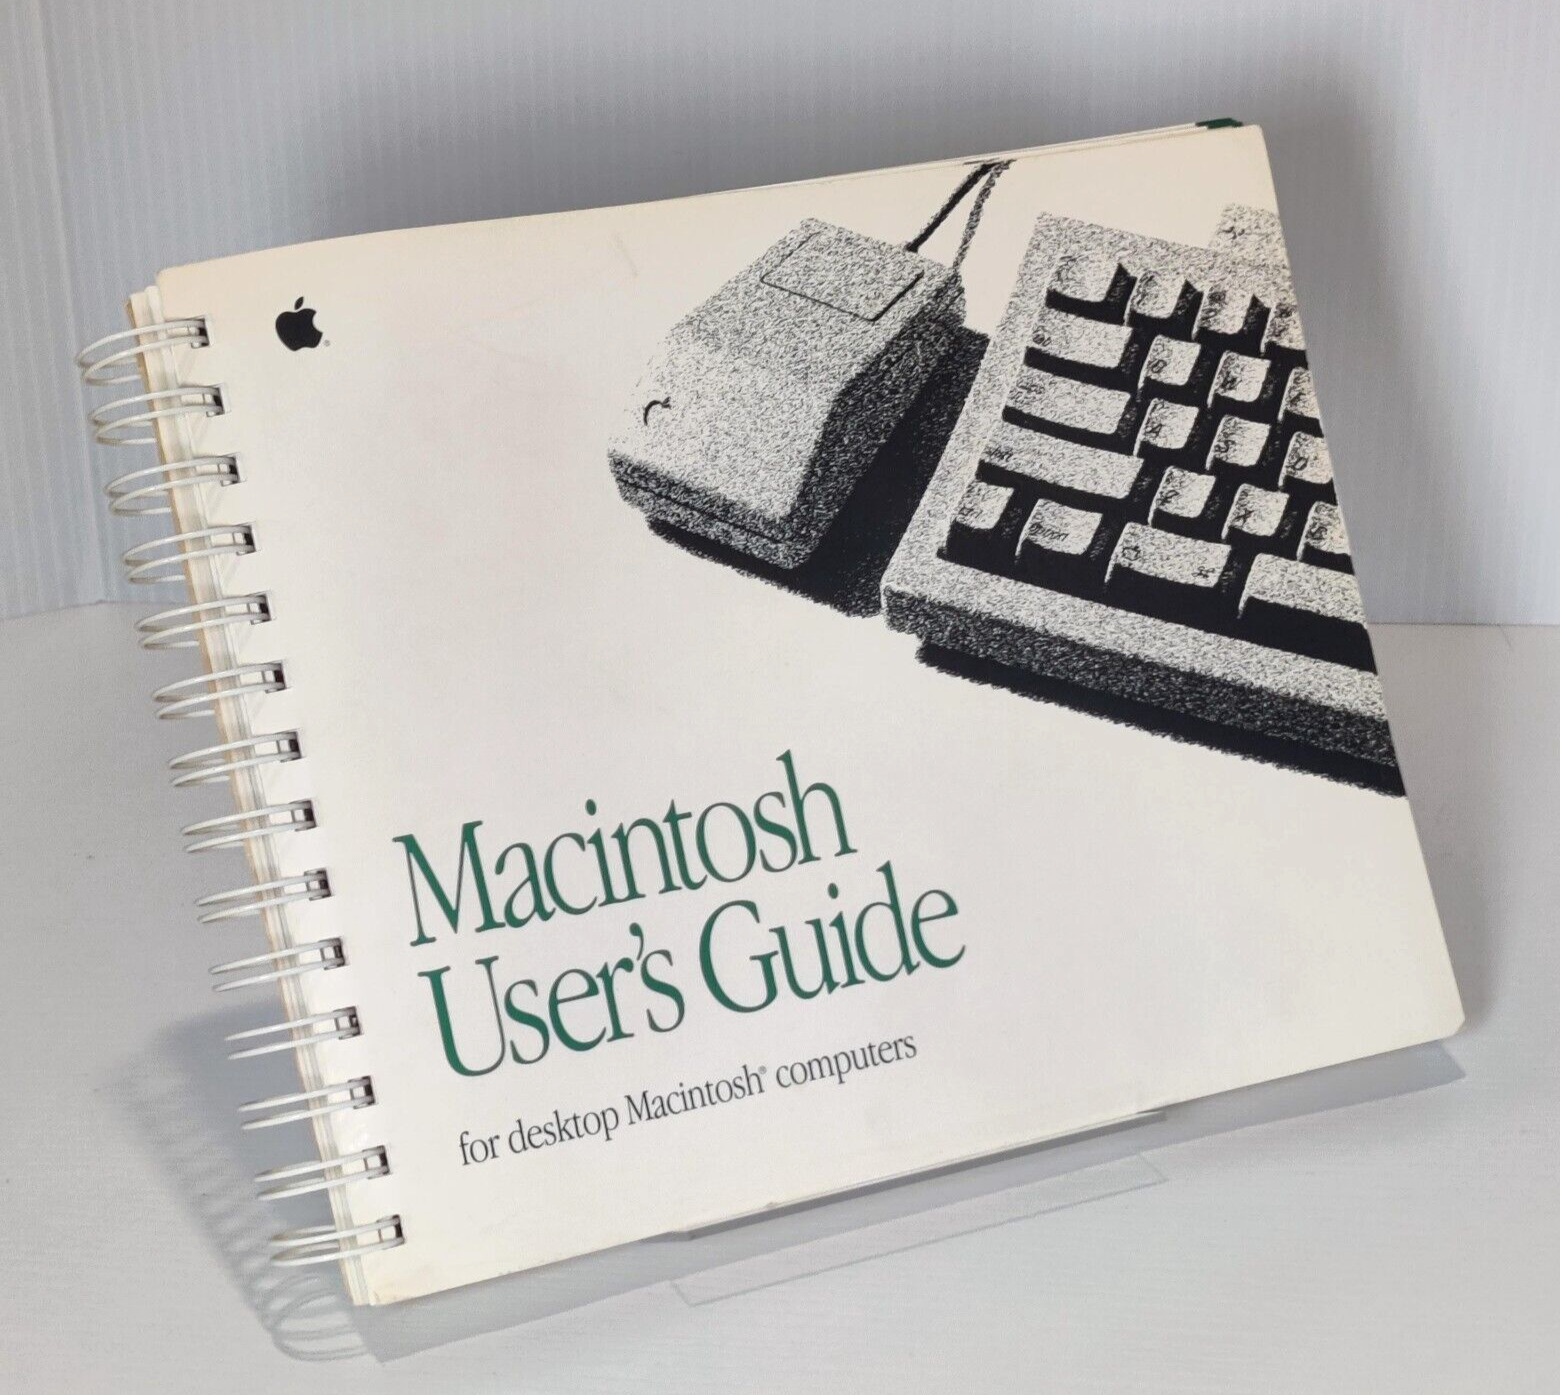 Apple Macintosh User's Guide for Desktop Macintosh Computers Manual